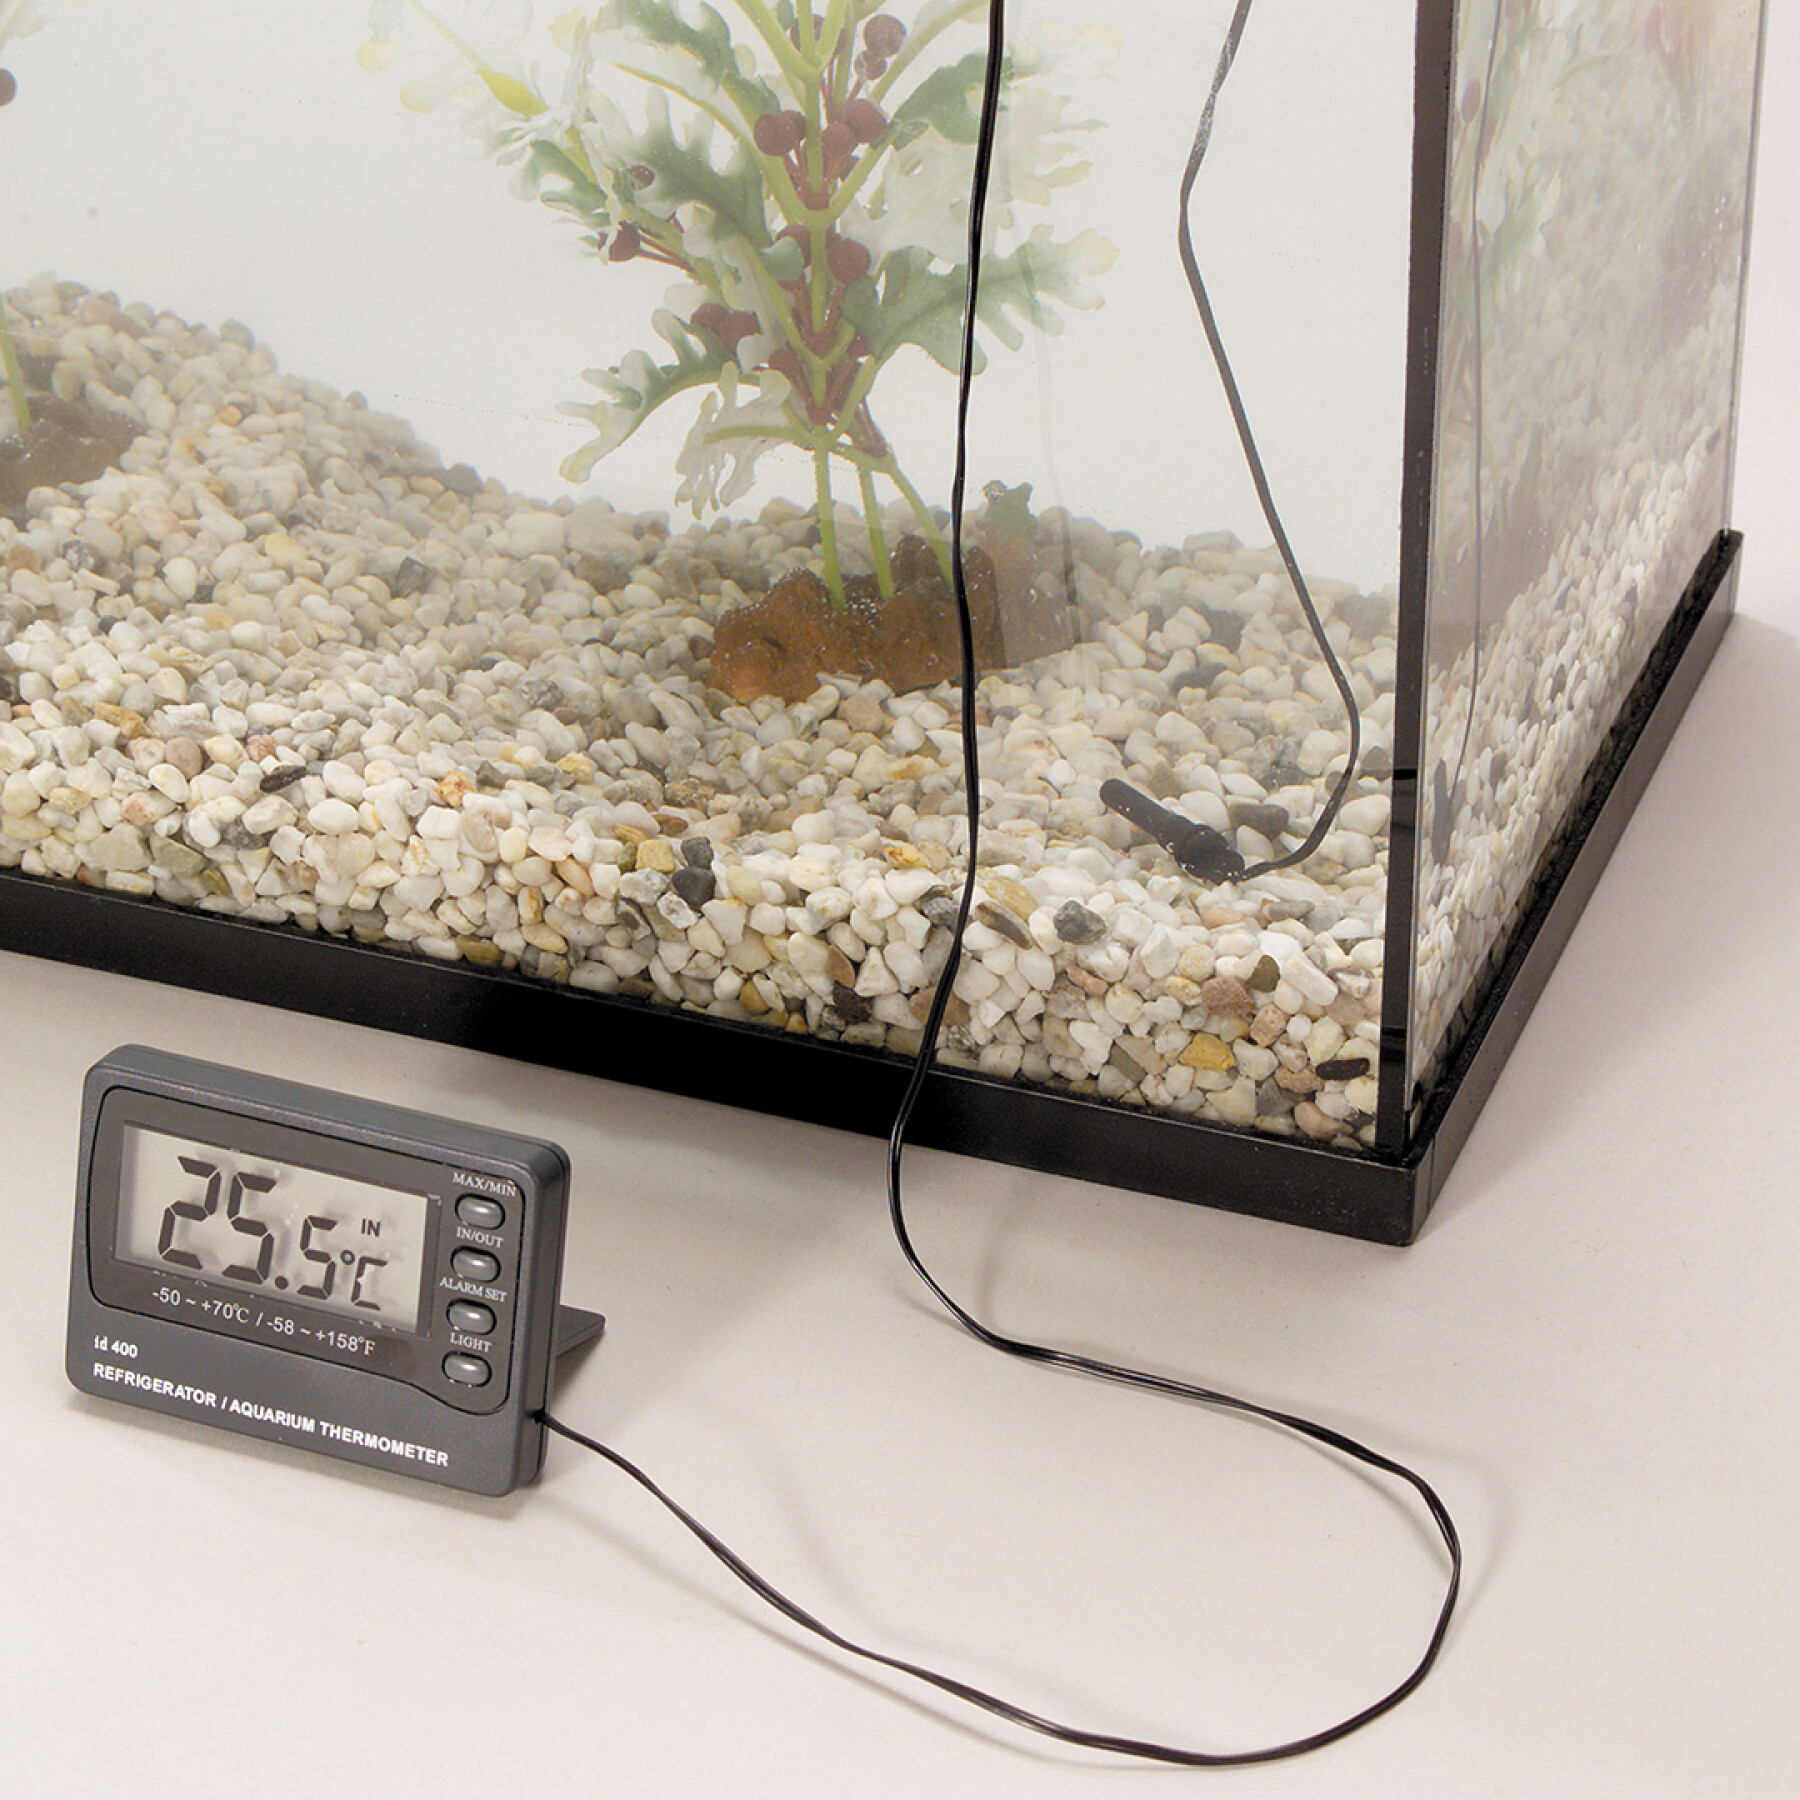 Digital thermometer with alarm Aqua Della